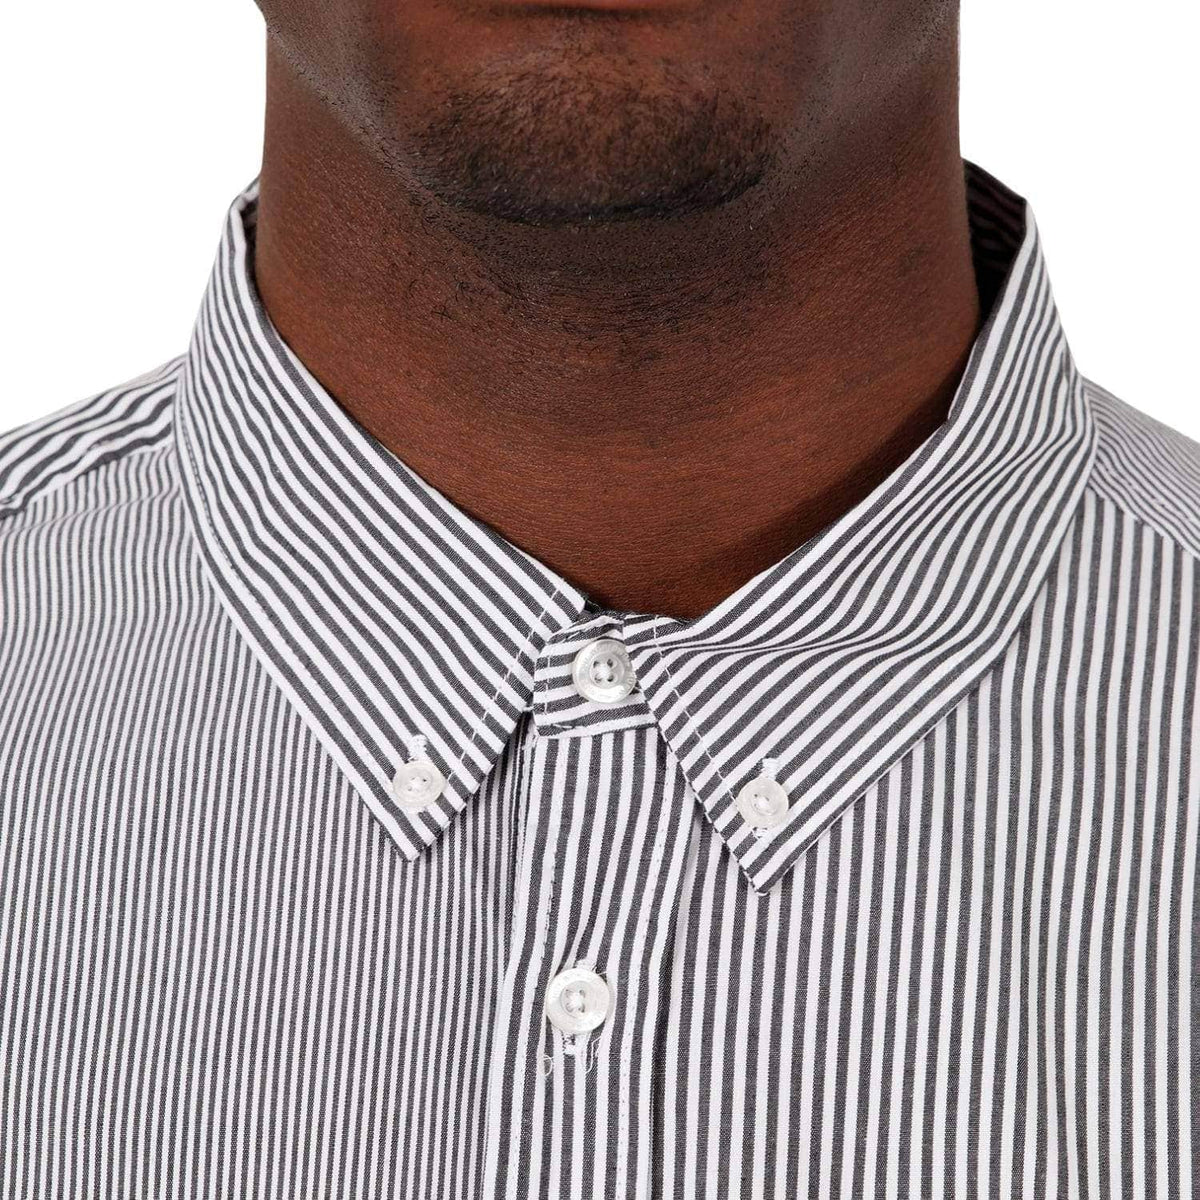 Huf Disorder Short Sleeve Shirt Black - Mens Casual Shirt by Huf